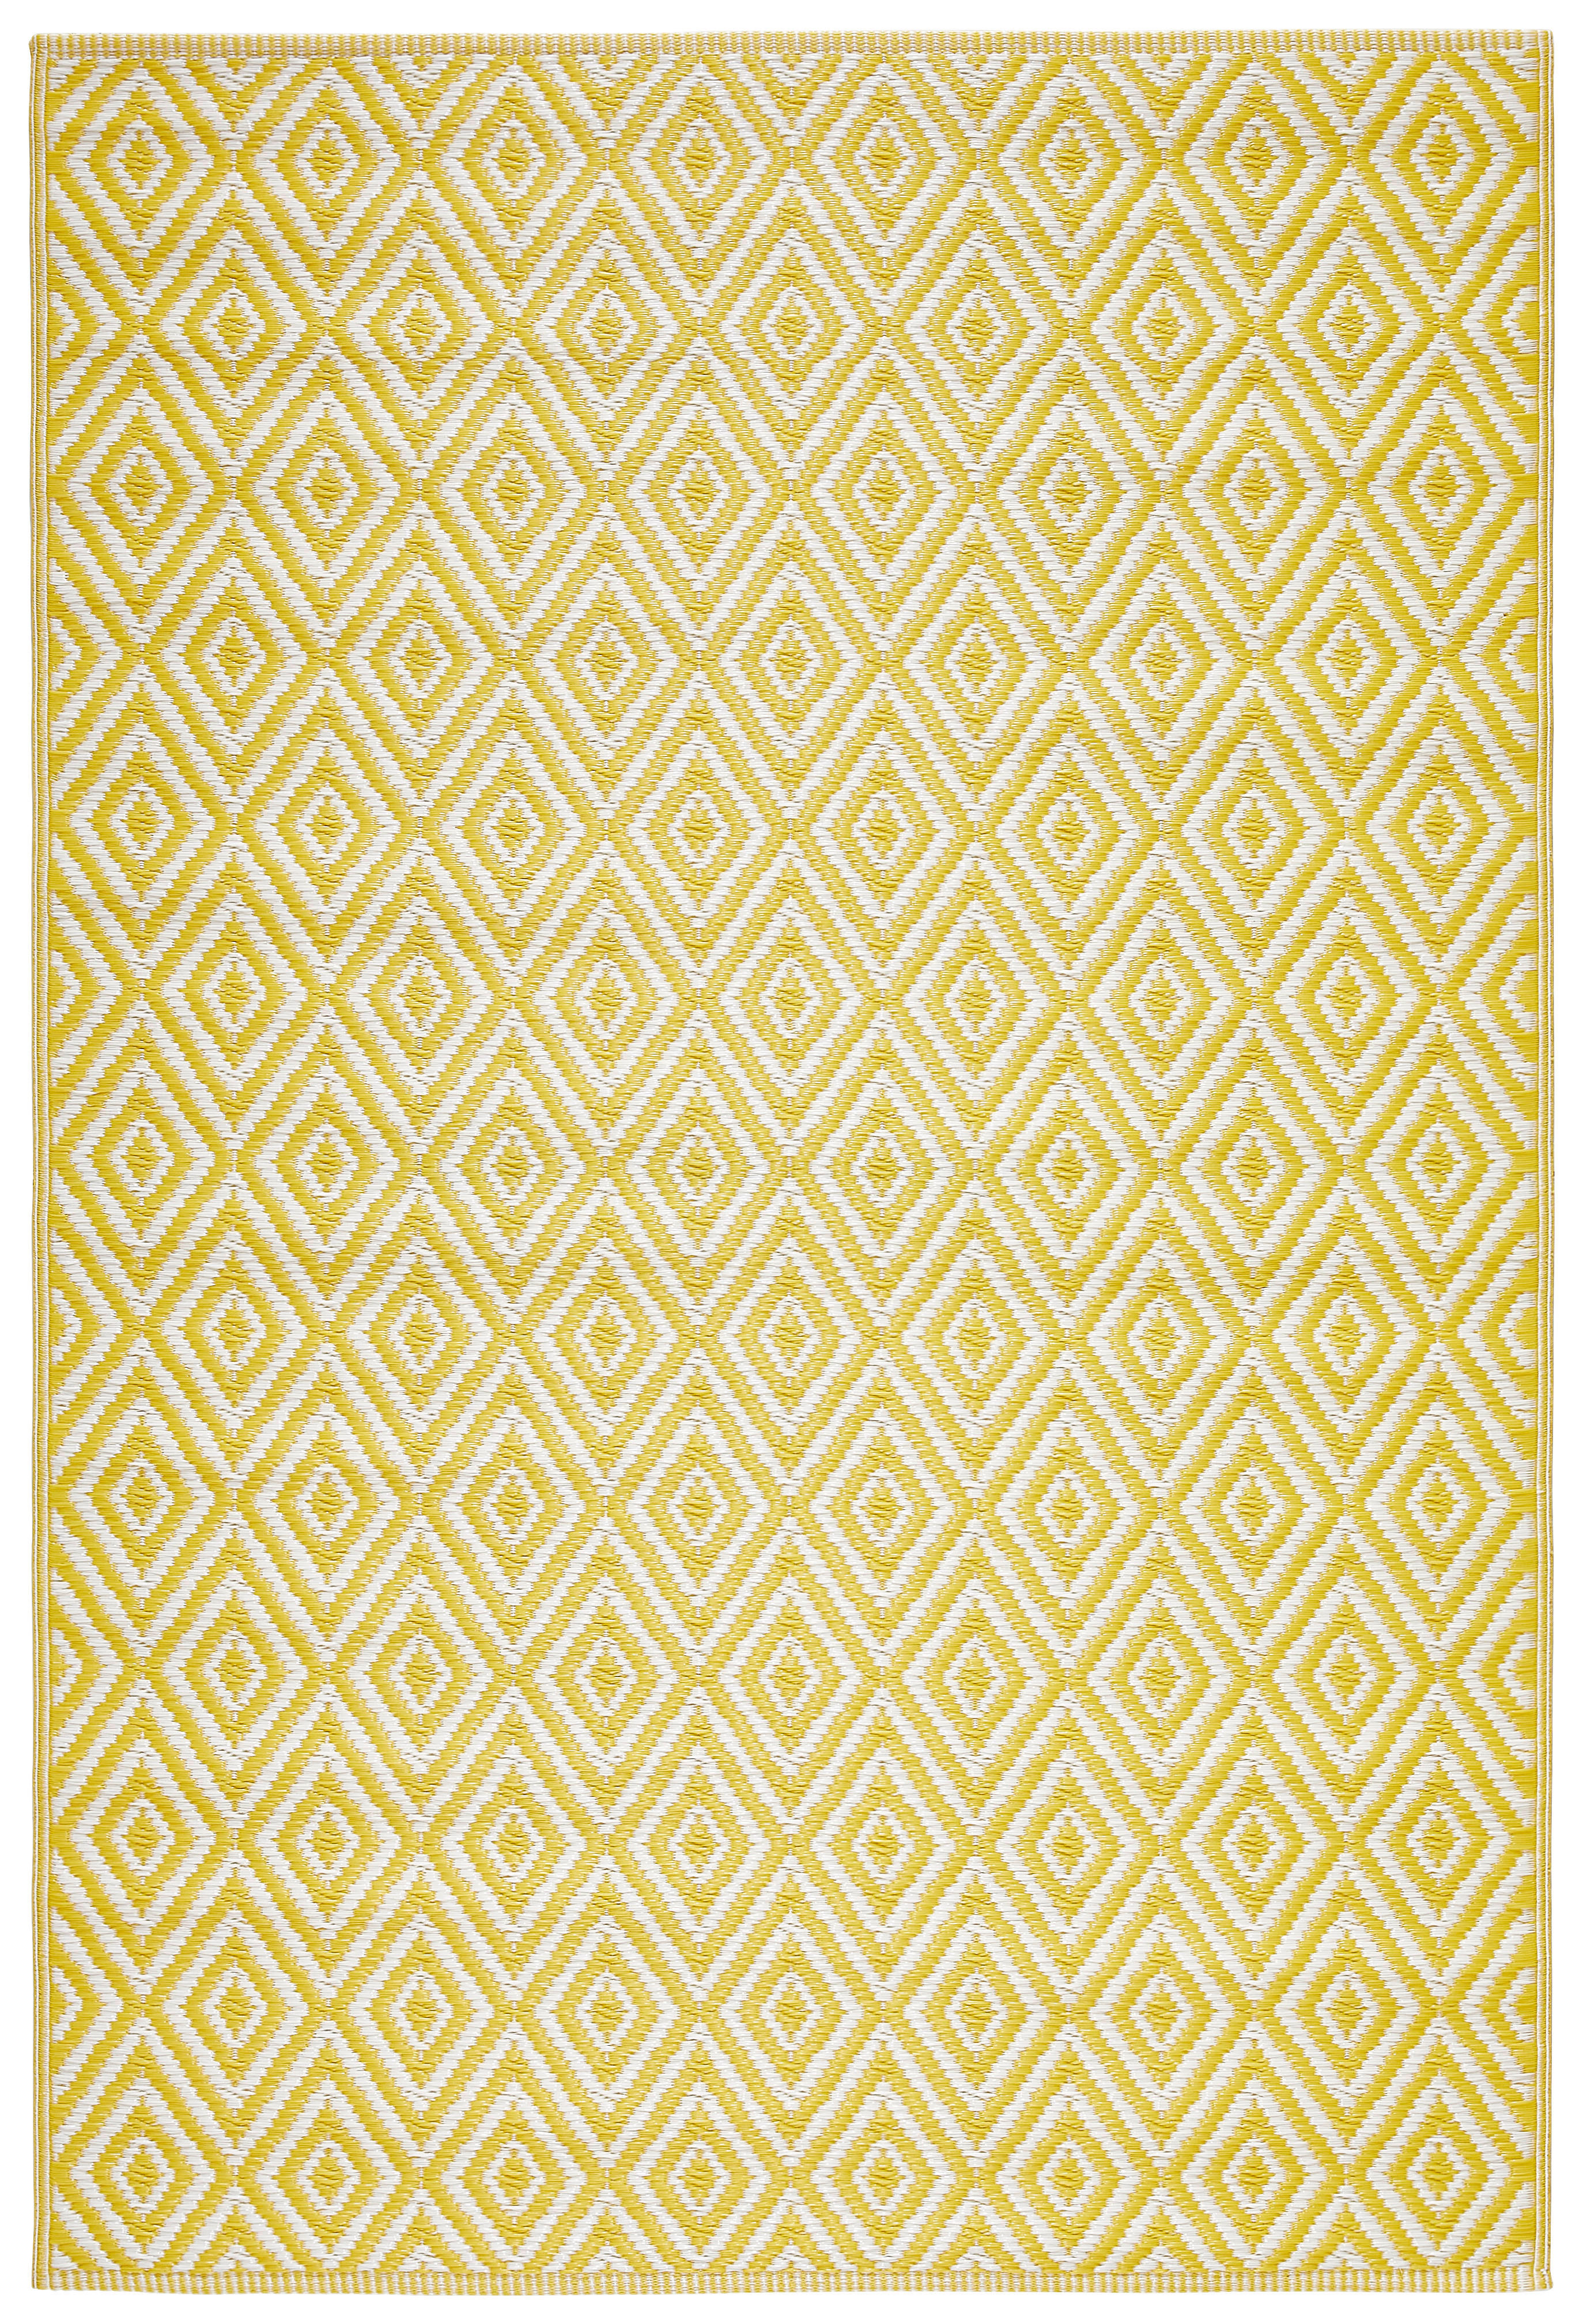 Boxxx VENKOVNÍ KOBEREC, 120/180 cm, žlutá, oranžová - žlutá, oranžová